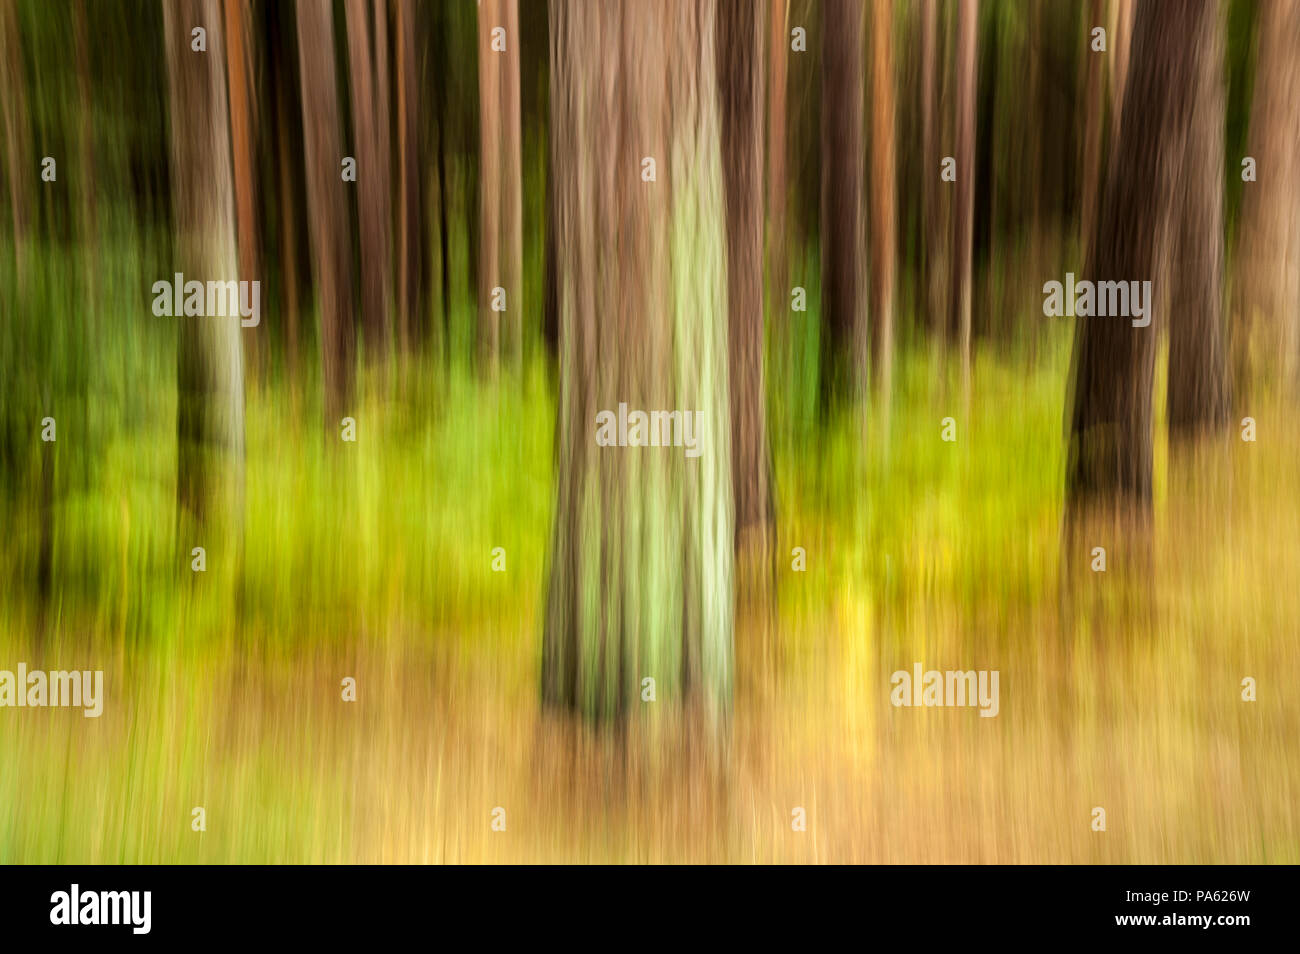 09-10-14 Il raggruppamento legno, East Lothian, Scozia, Regno Unito. Immagini sfocate, alberi astratti. Foto scattata con una lenta velocità di otturazione e movimento. Foto: © Simon Grosset Foto Stock